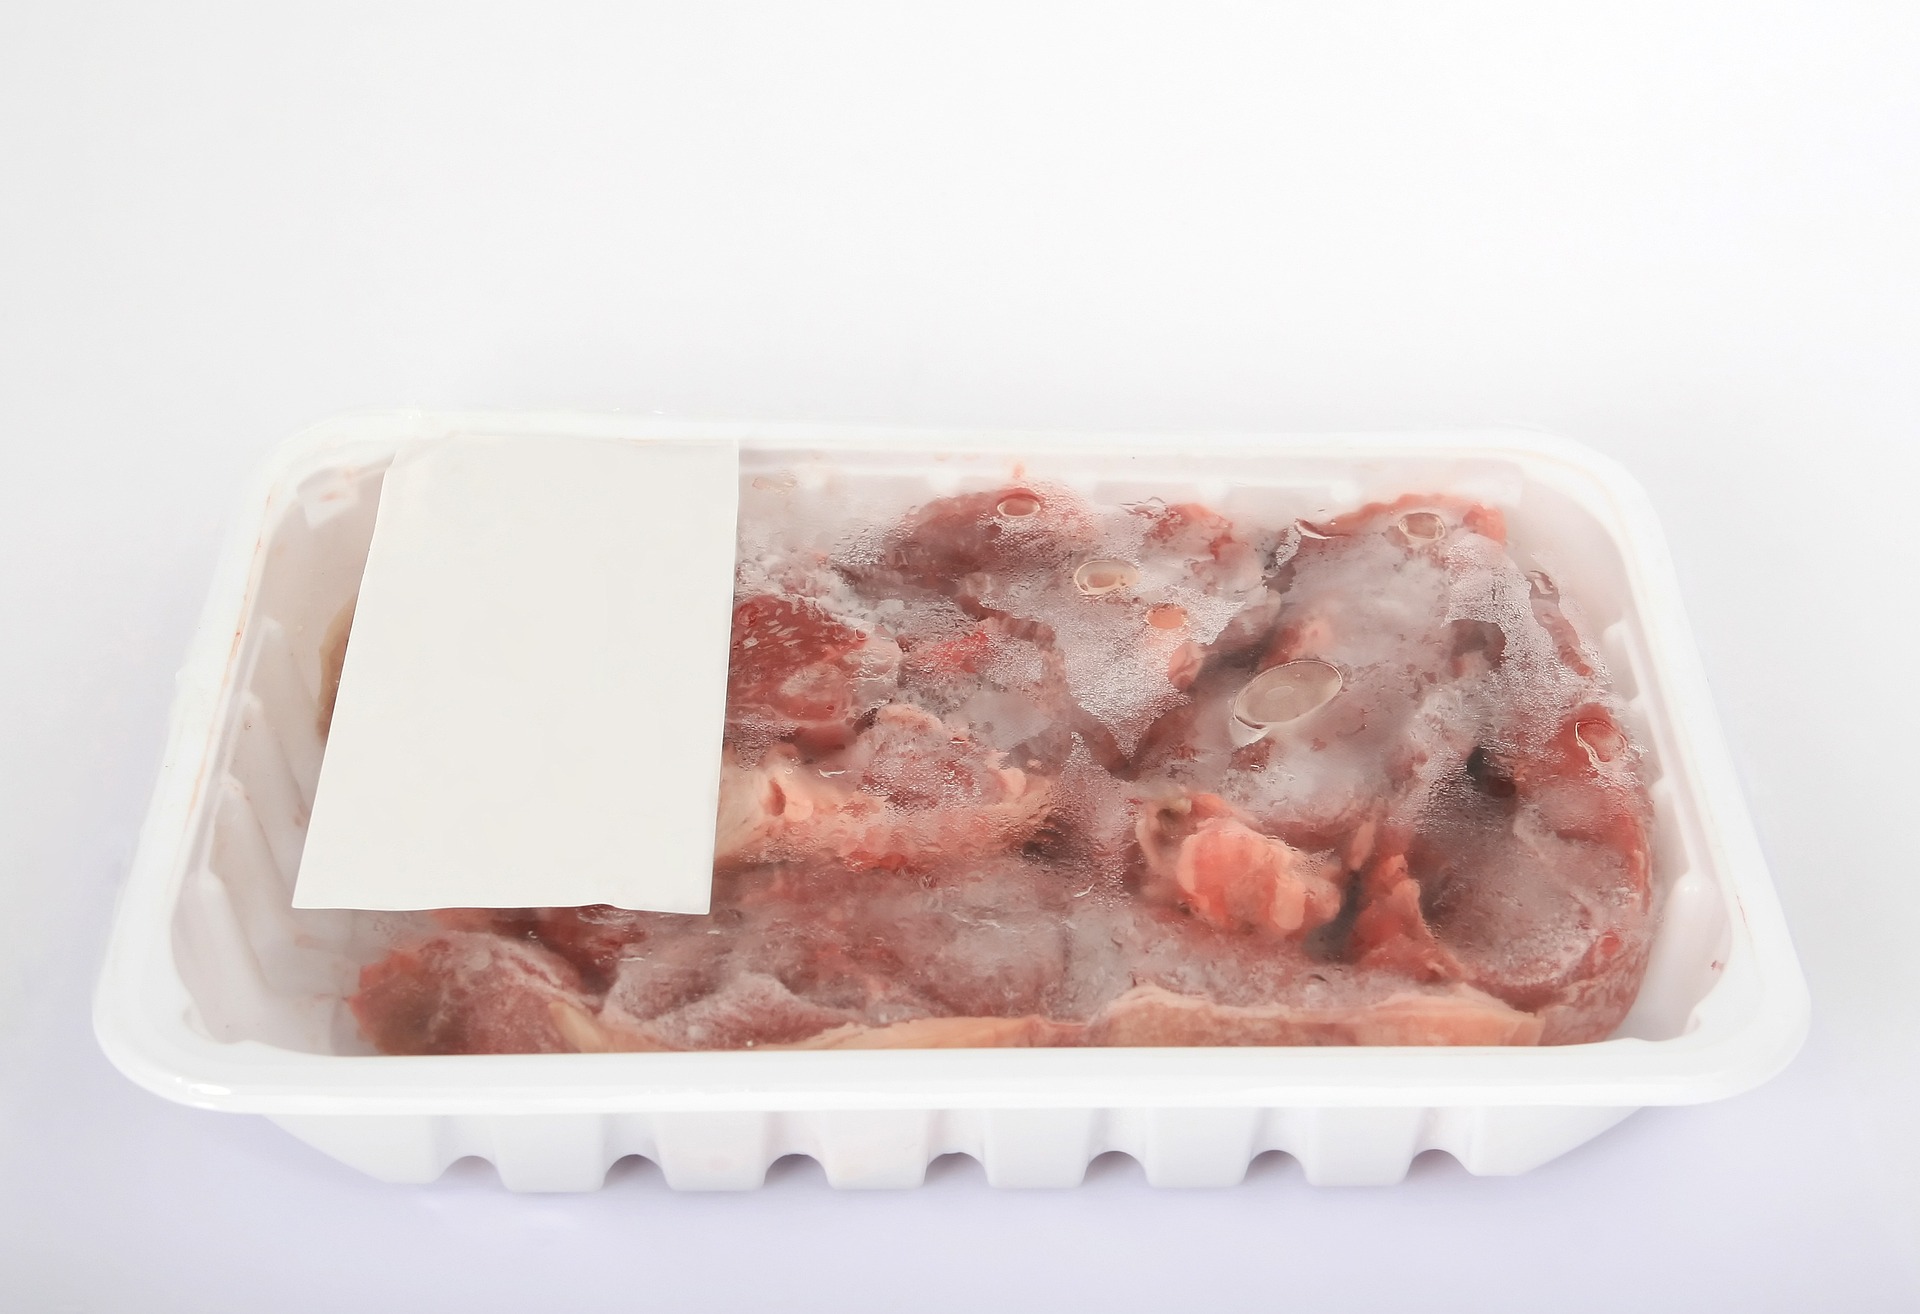 דברים שכדאי לדעת כמה זמן בשר קפוא יכול להיות במקרר